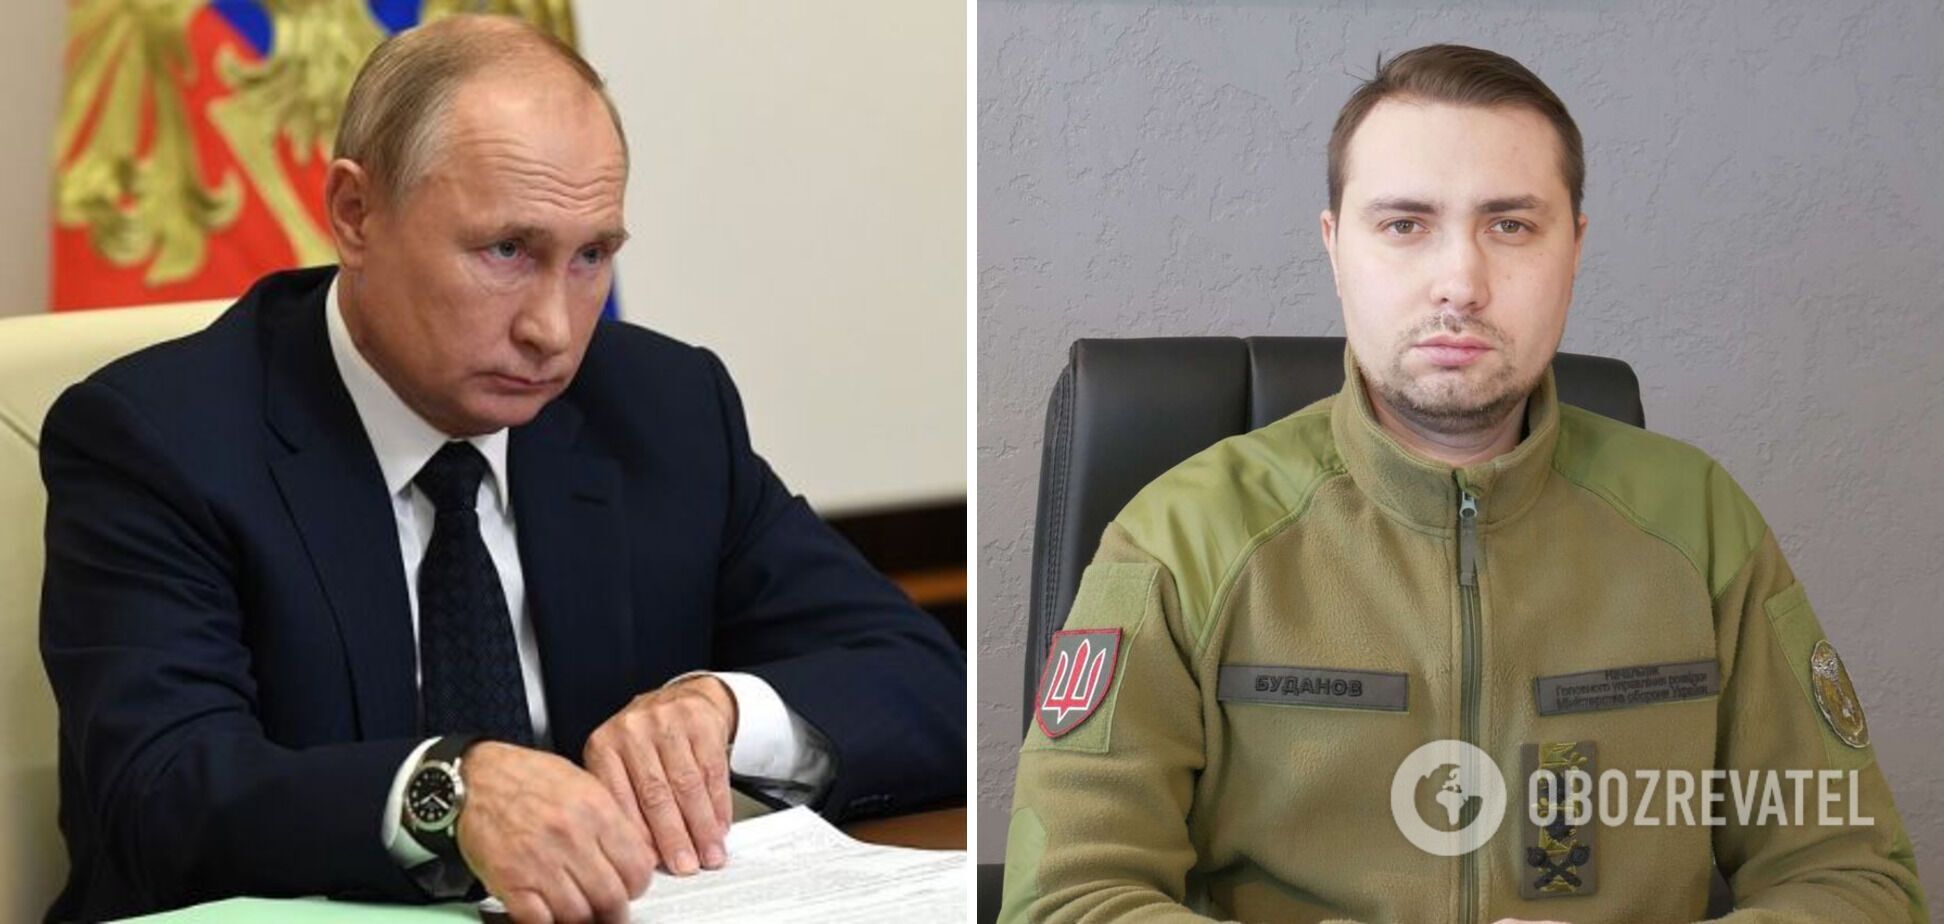 Буданов не исключает теневого переворота в России